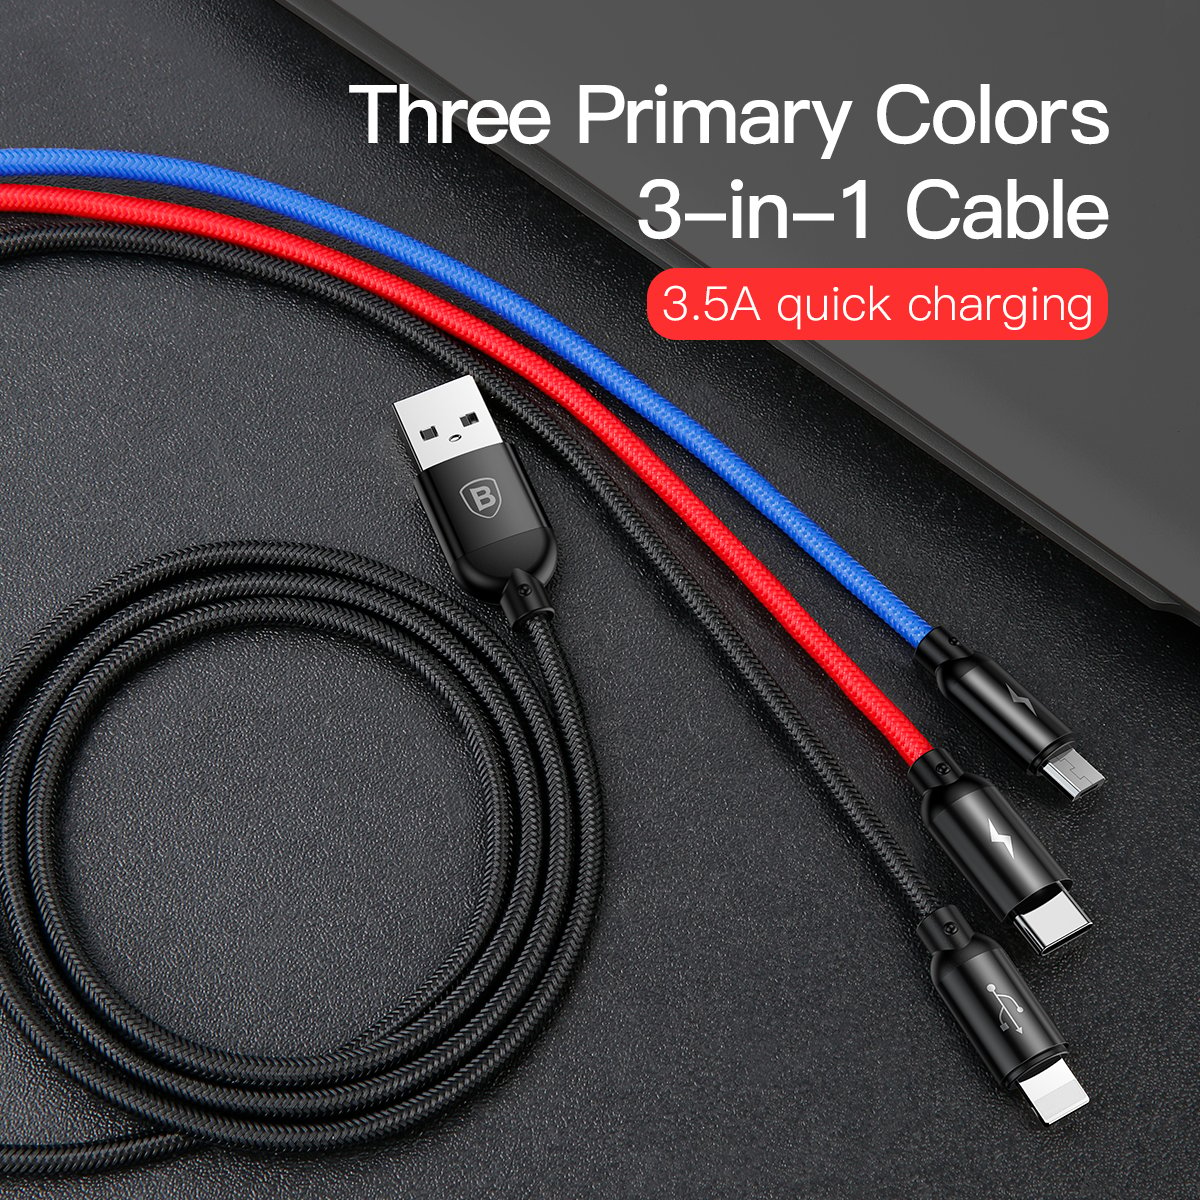 Cáp sạc 3 đầu và truyền dữ liệu tốc độ cao Baseus Three Primary Colors 3 in 1 cable CAMLT-BSY (USB to Type C/ Micro/ Light-ning Fast Charging Cable, 3.5A)- Hàng chính hãng